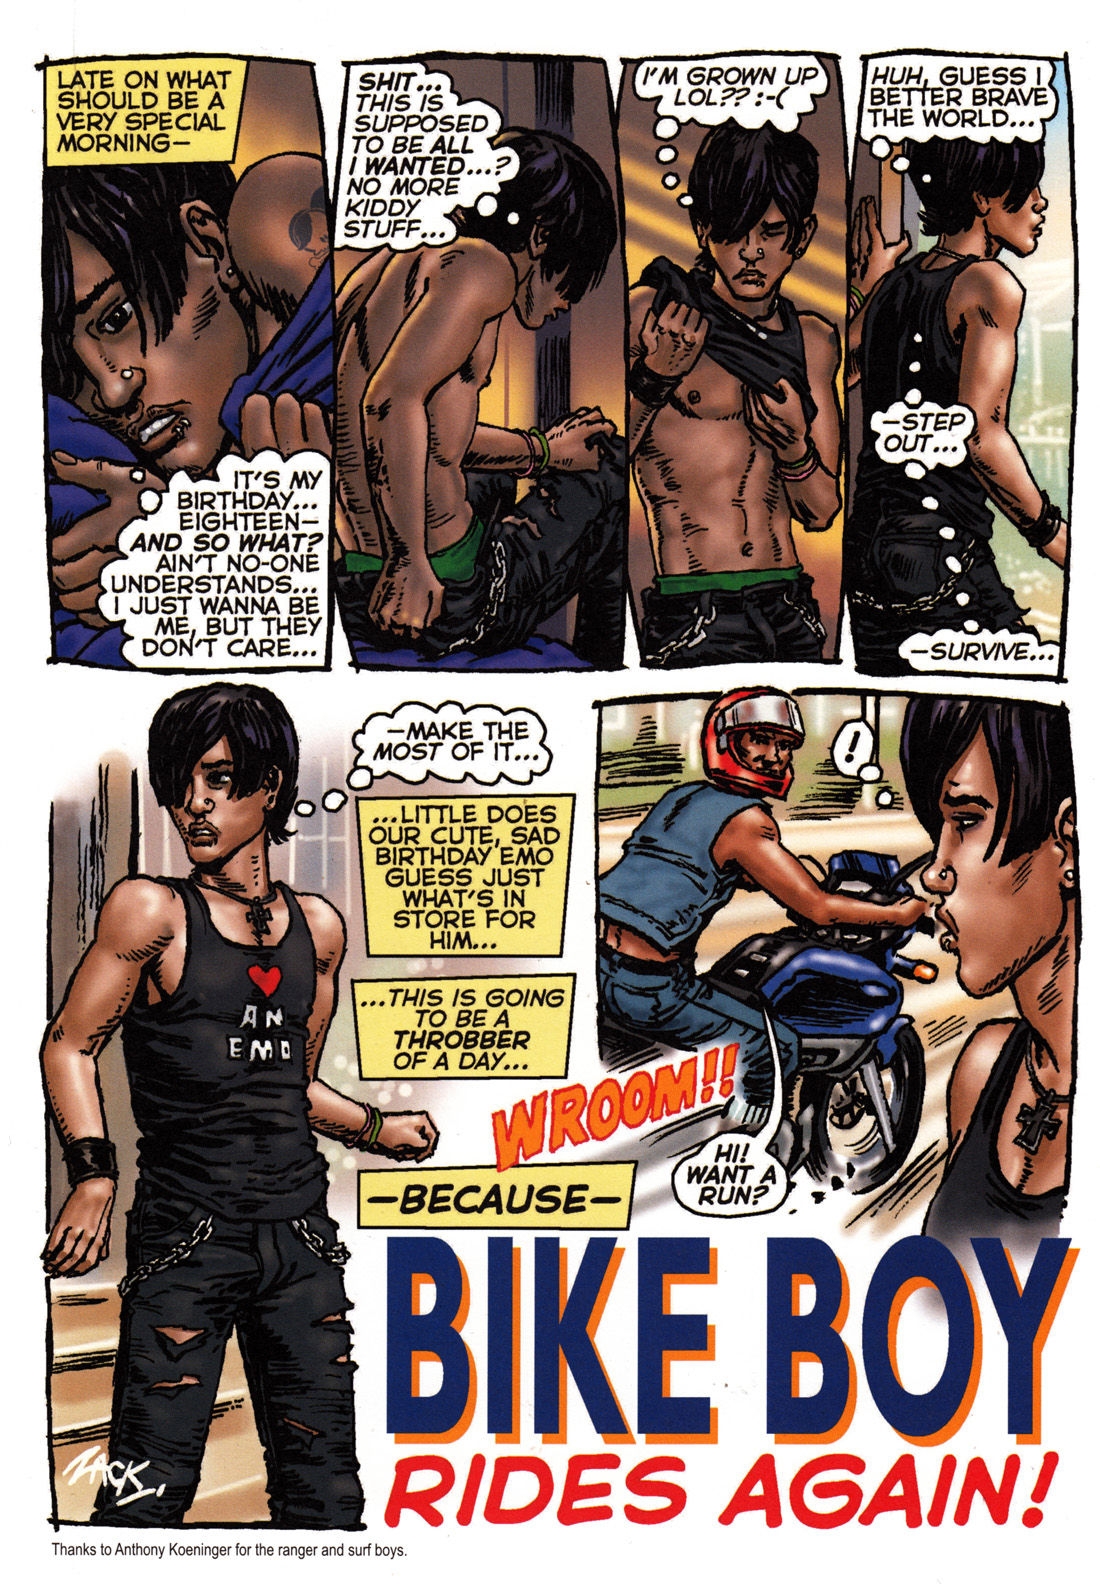 [Oliver Frey] Bike boy rides again 4